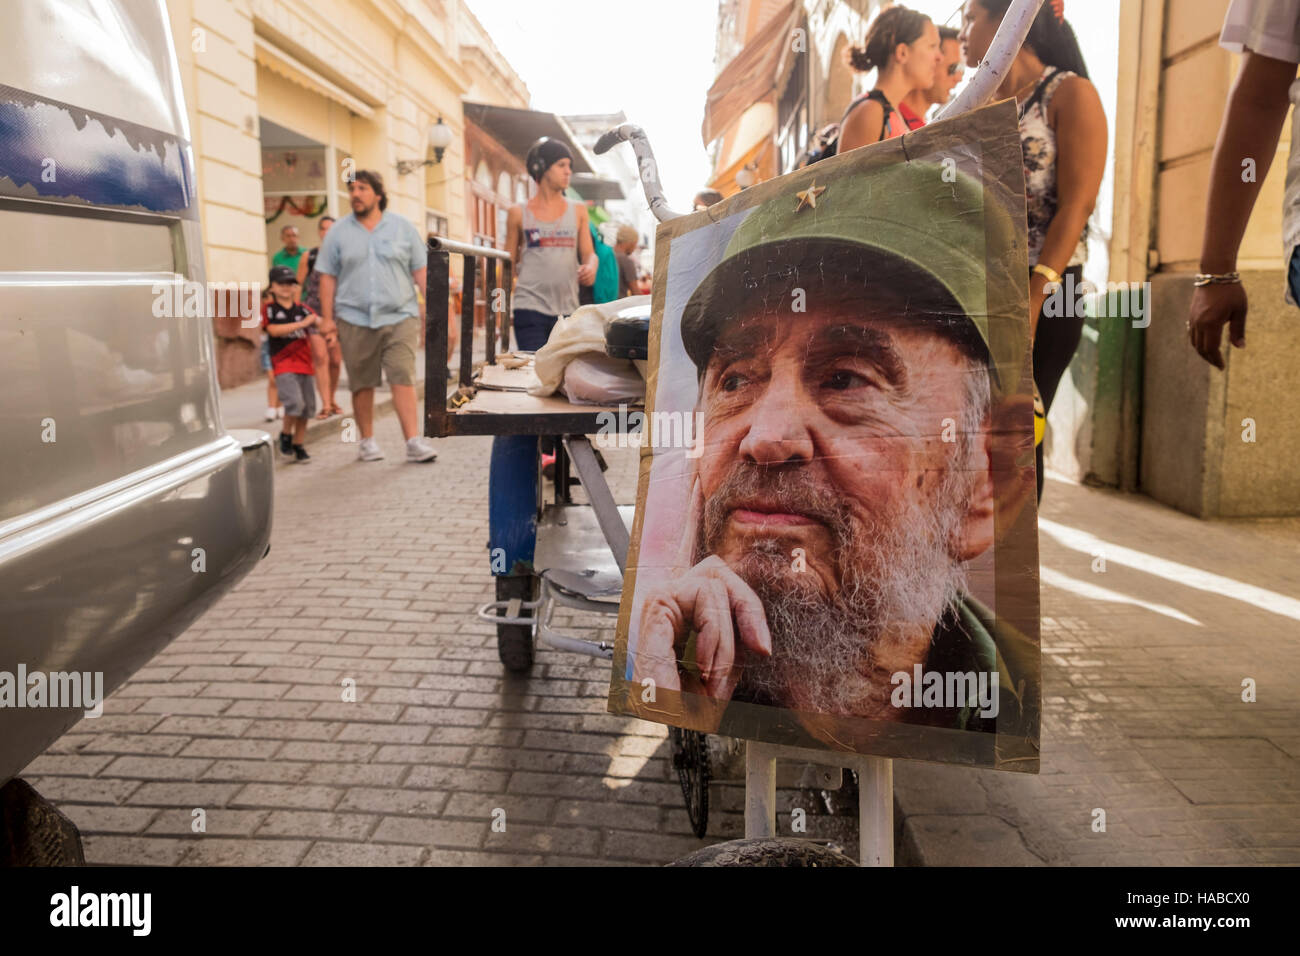 La Havane, Cuba, le 26 novembre 2016. Scènes autour de la vieille ville de La Havane le jour Castros décès a été annoncé. Photo de Fidel Castro, fixée à l'avant d'un tricycle mans livraison sur la Calle Obispo. Banque D'Images